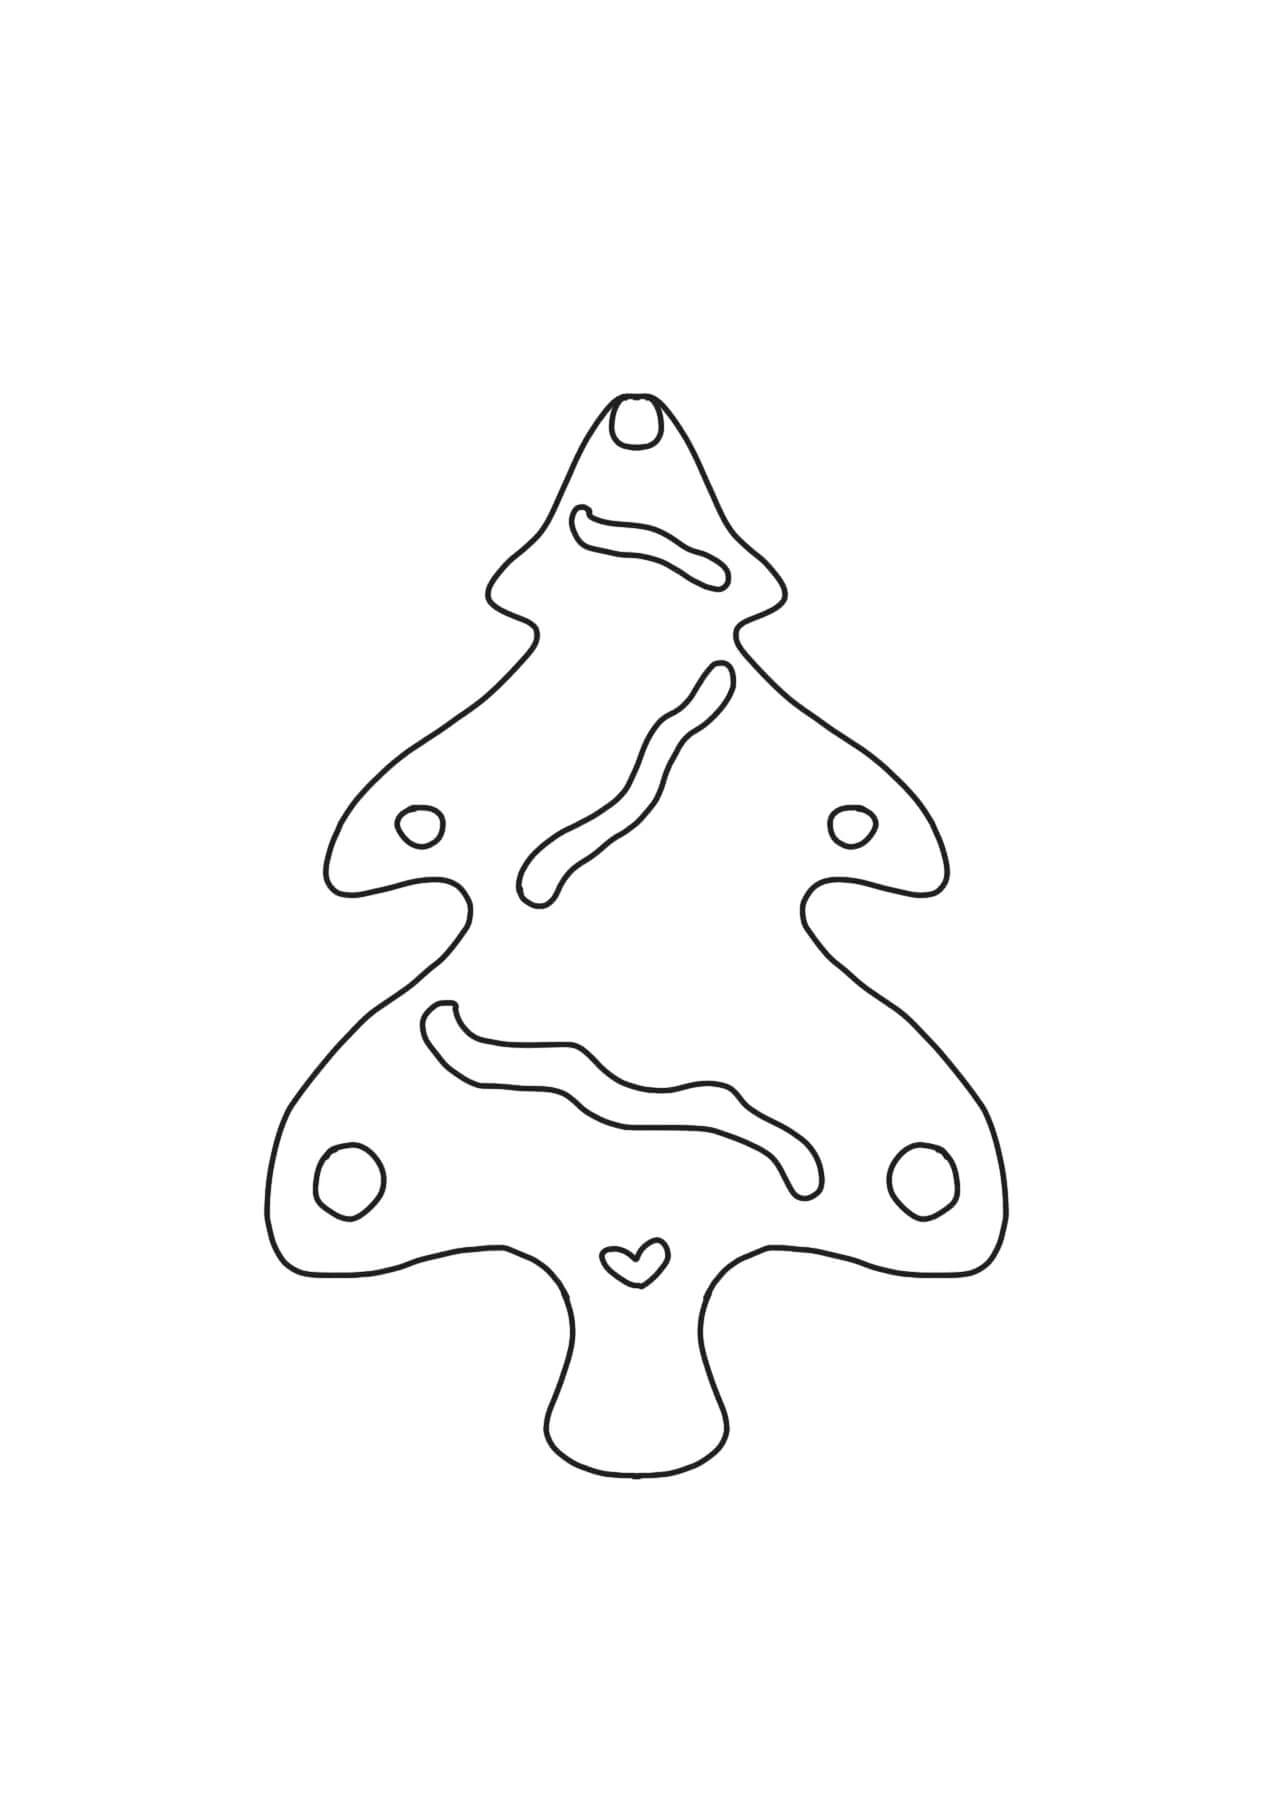 Kekse in Form eines Weihnachtsbaums